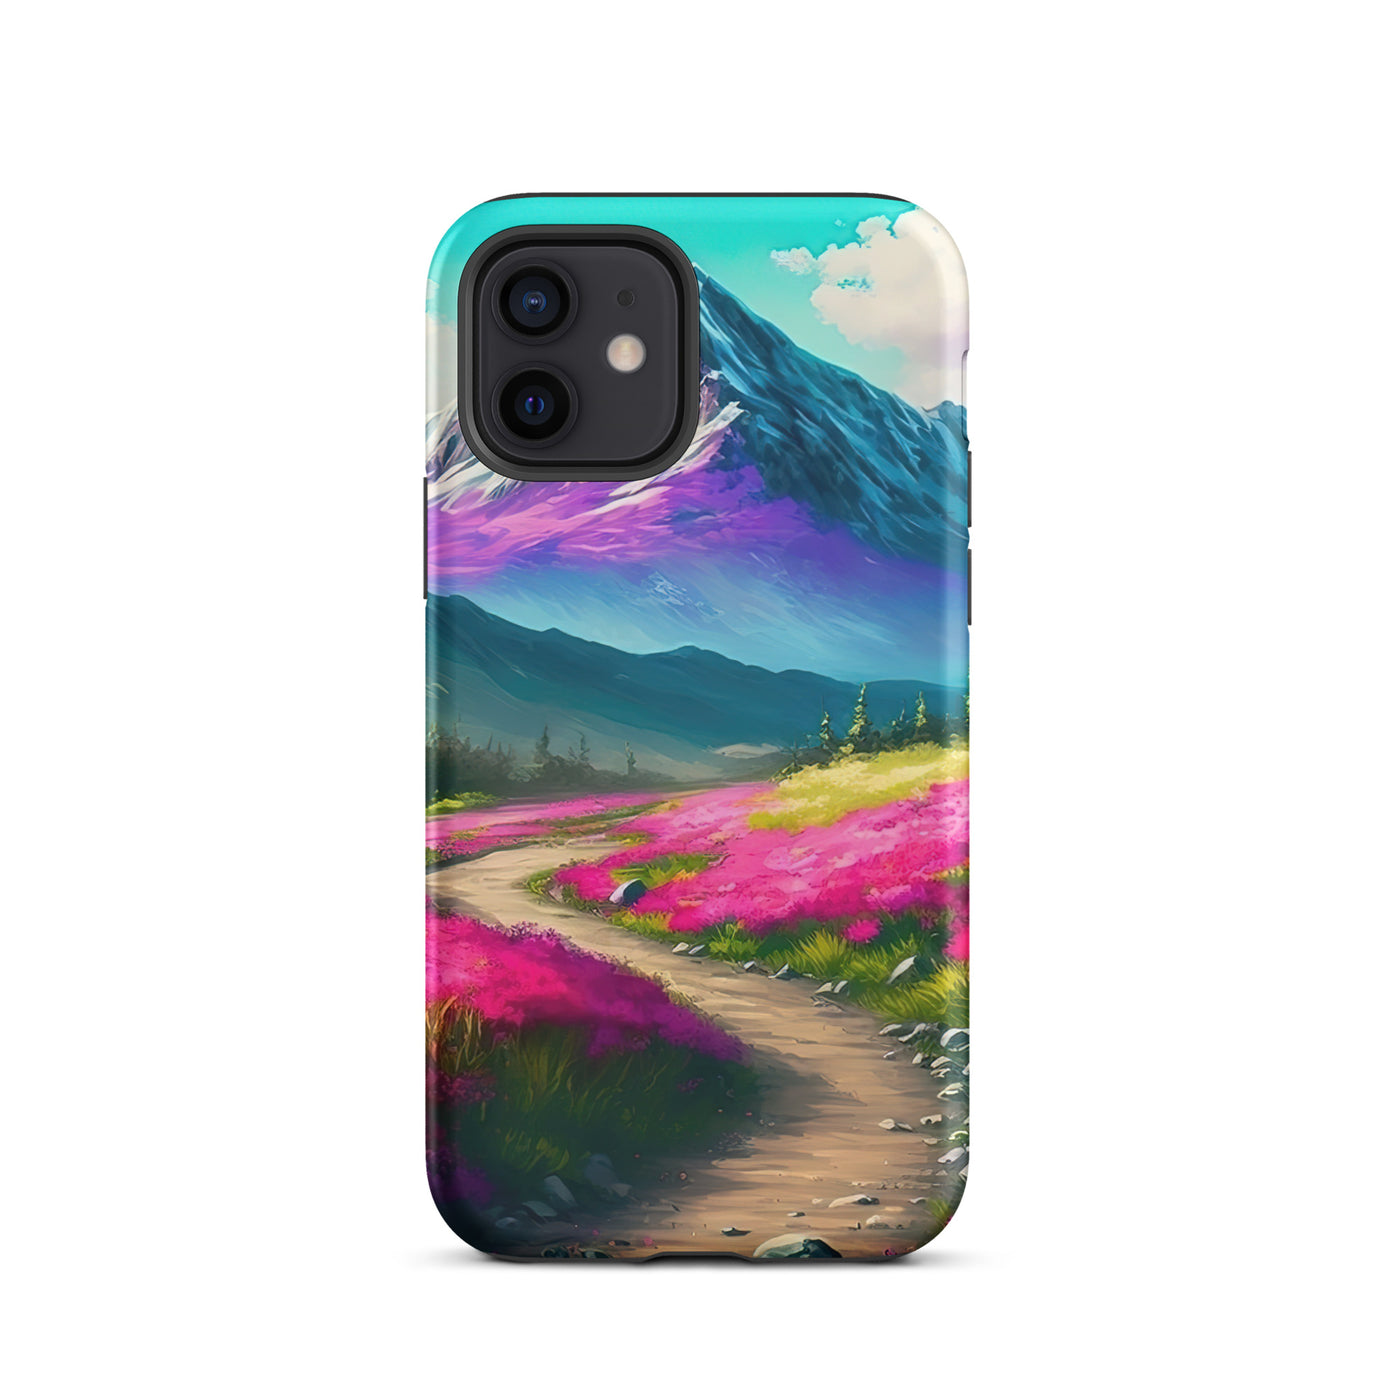 Berg, pinke Blumen und Wanderweg - Landschaftsmalerei - iPhone Schutzhülle (robust) berge xxx iPhone 12